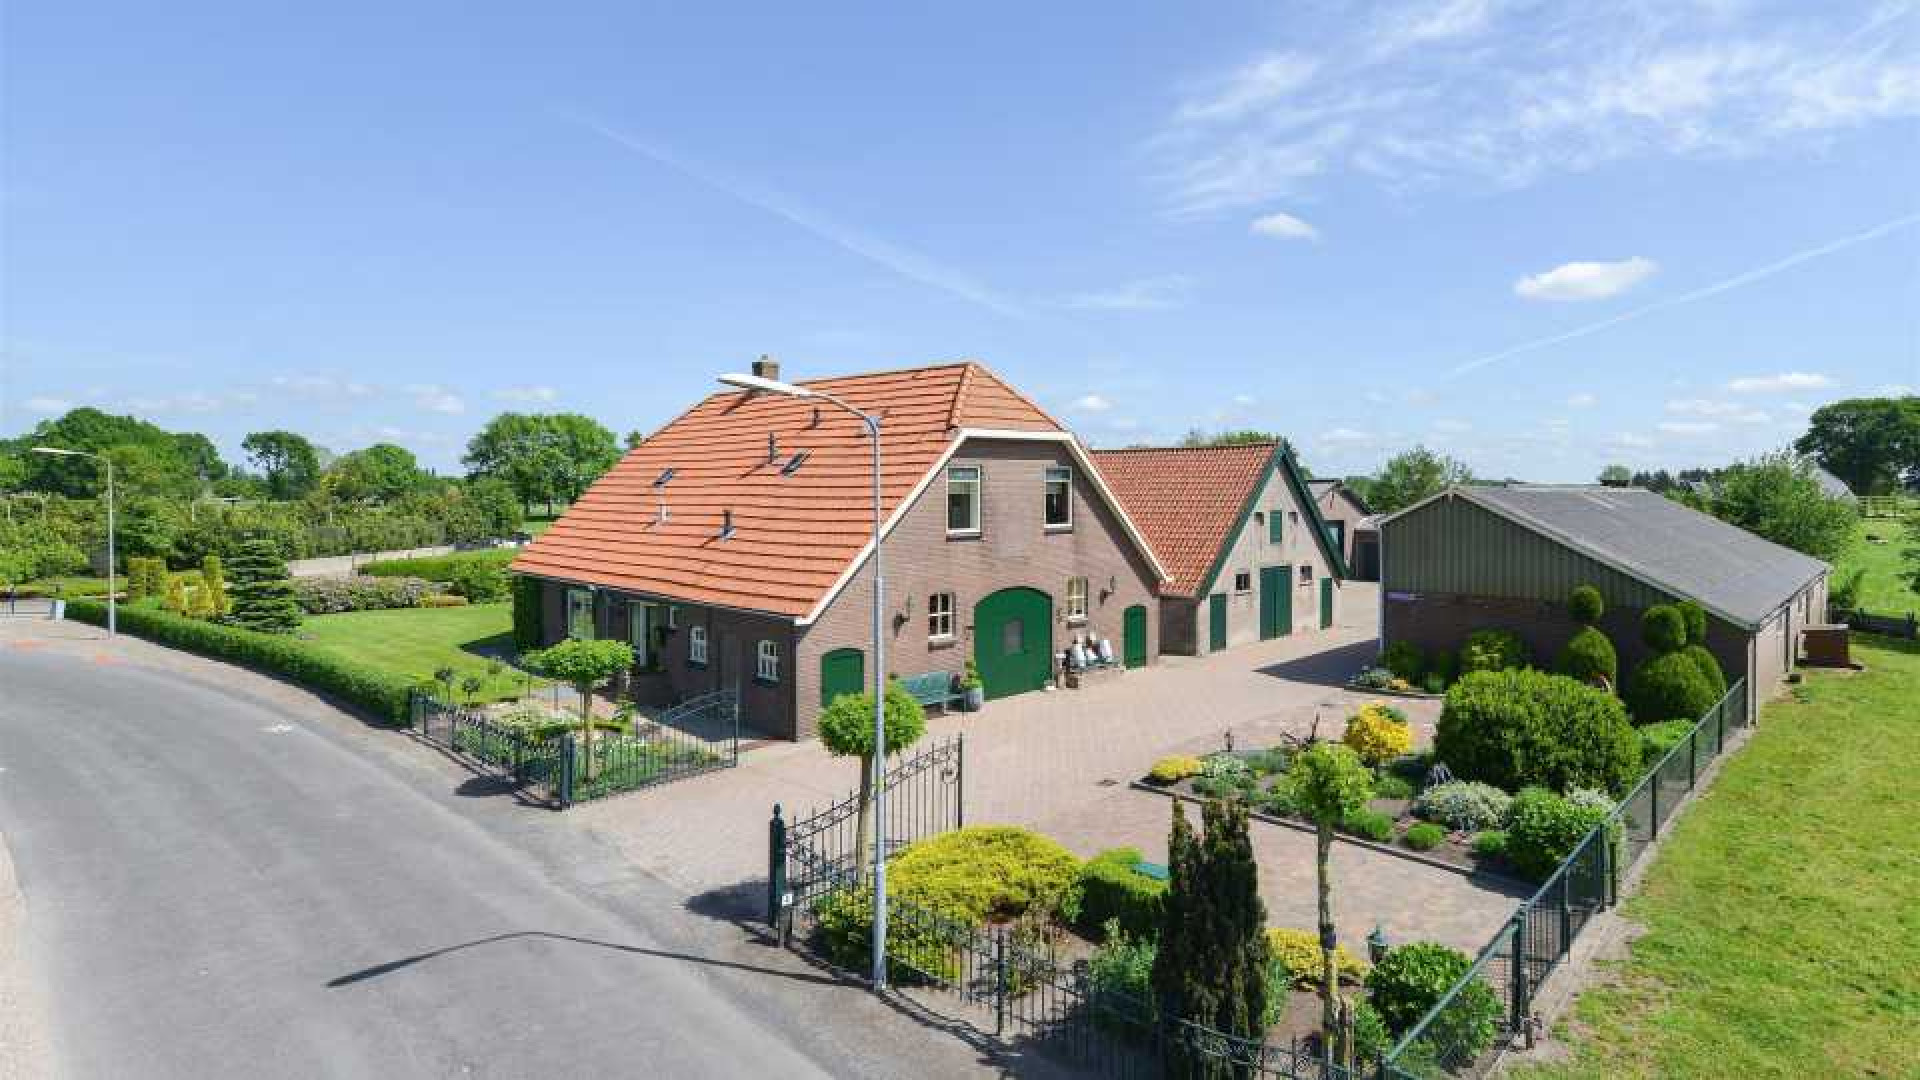 Ajax voetballer Donny van de Beek scoort woonboerderij.